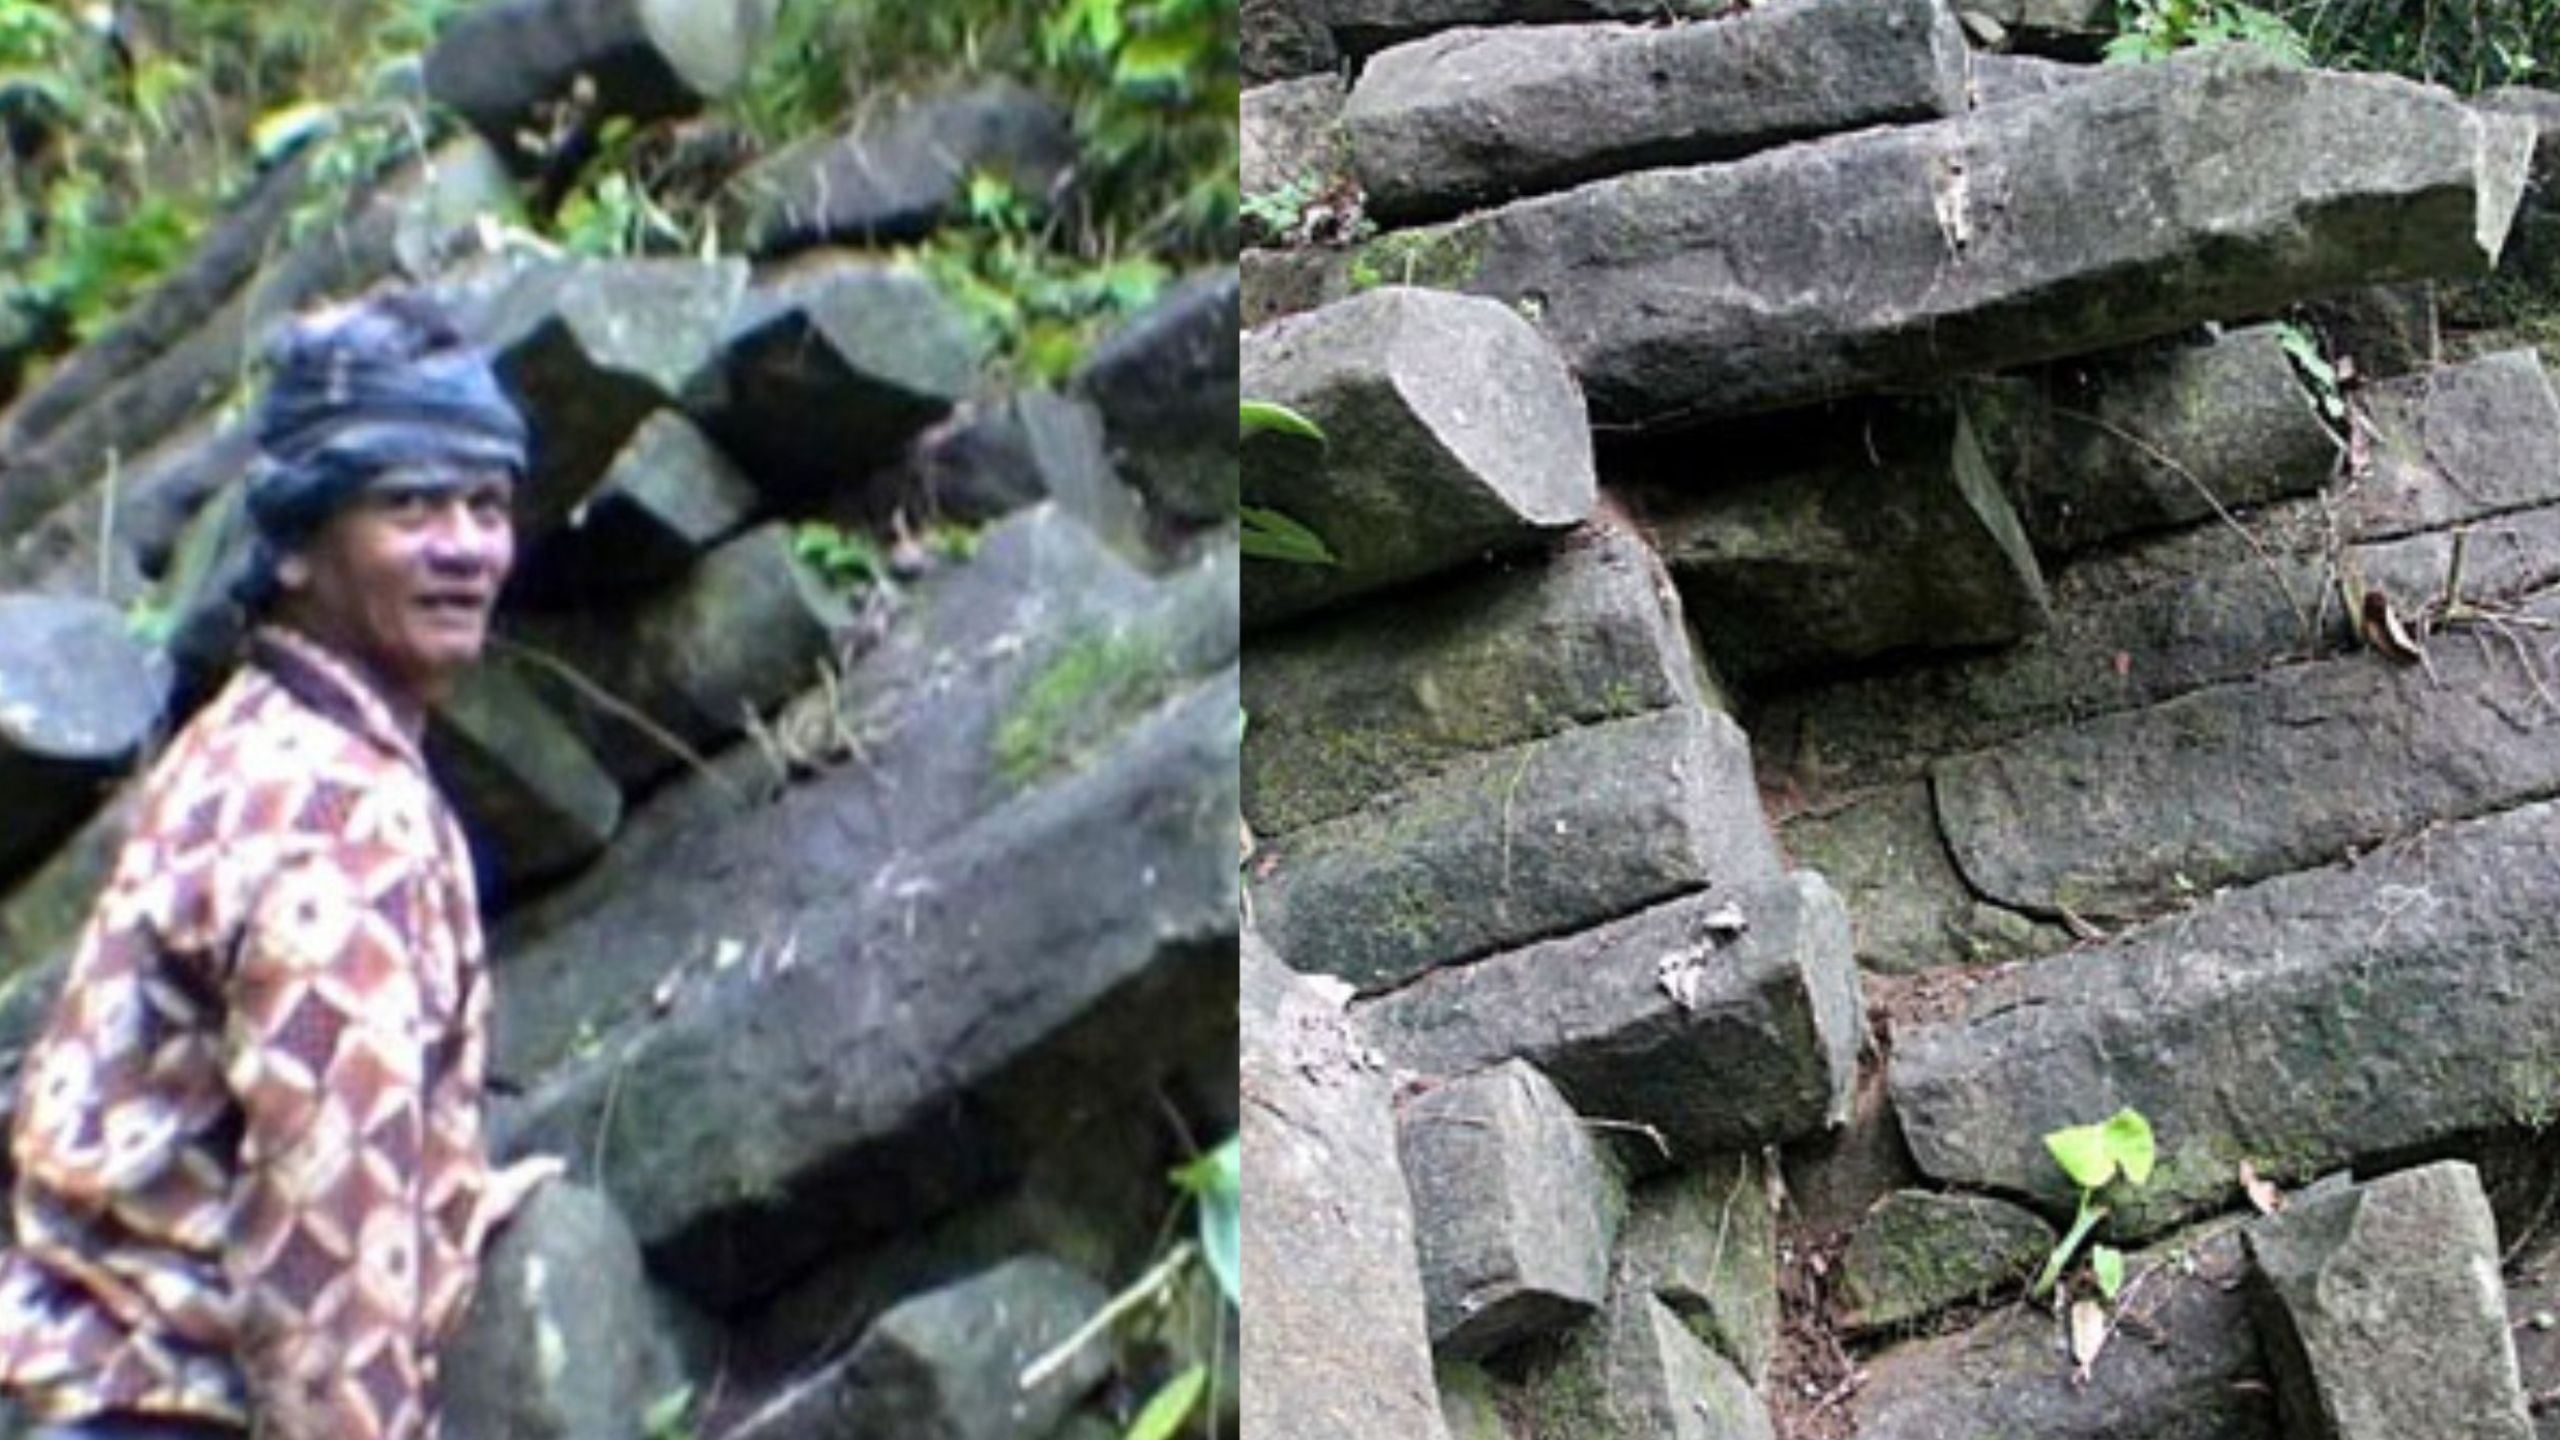 Rahasia Asal Usul Batu di Situs Gunung Padang, Mirip Situs Tangga Segi Enam Irlandia 